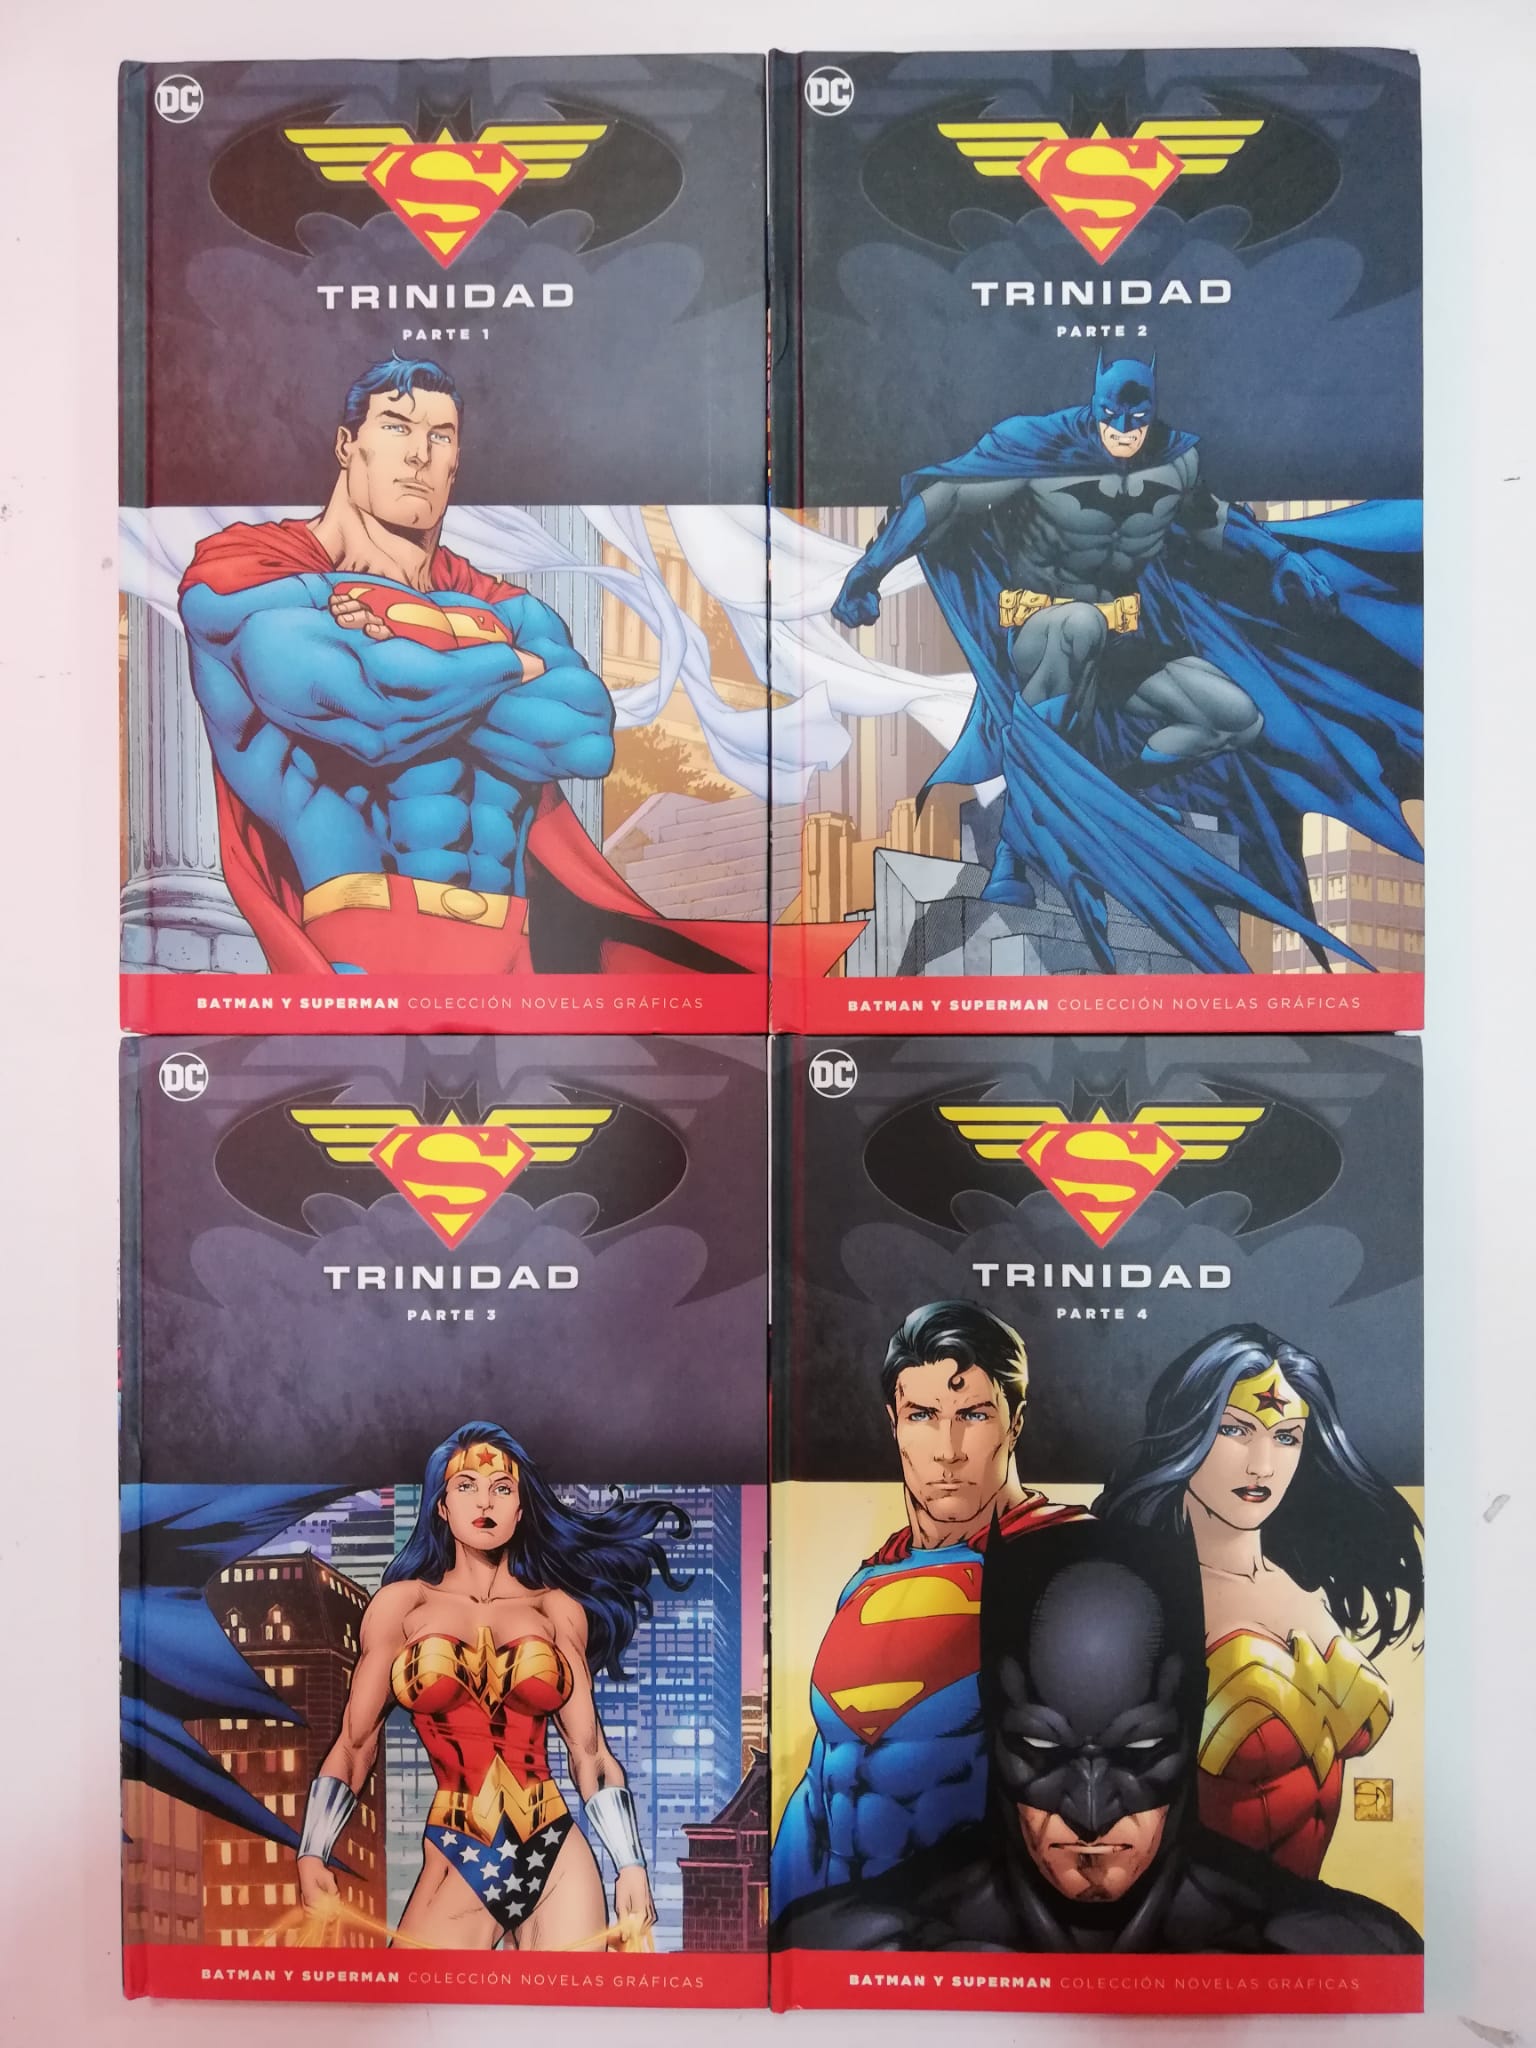 Batman y Superman Colección Novelas Gráficas: Trinidad Salvat ENcuadrocomics